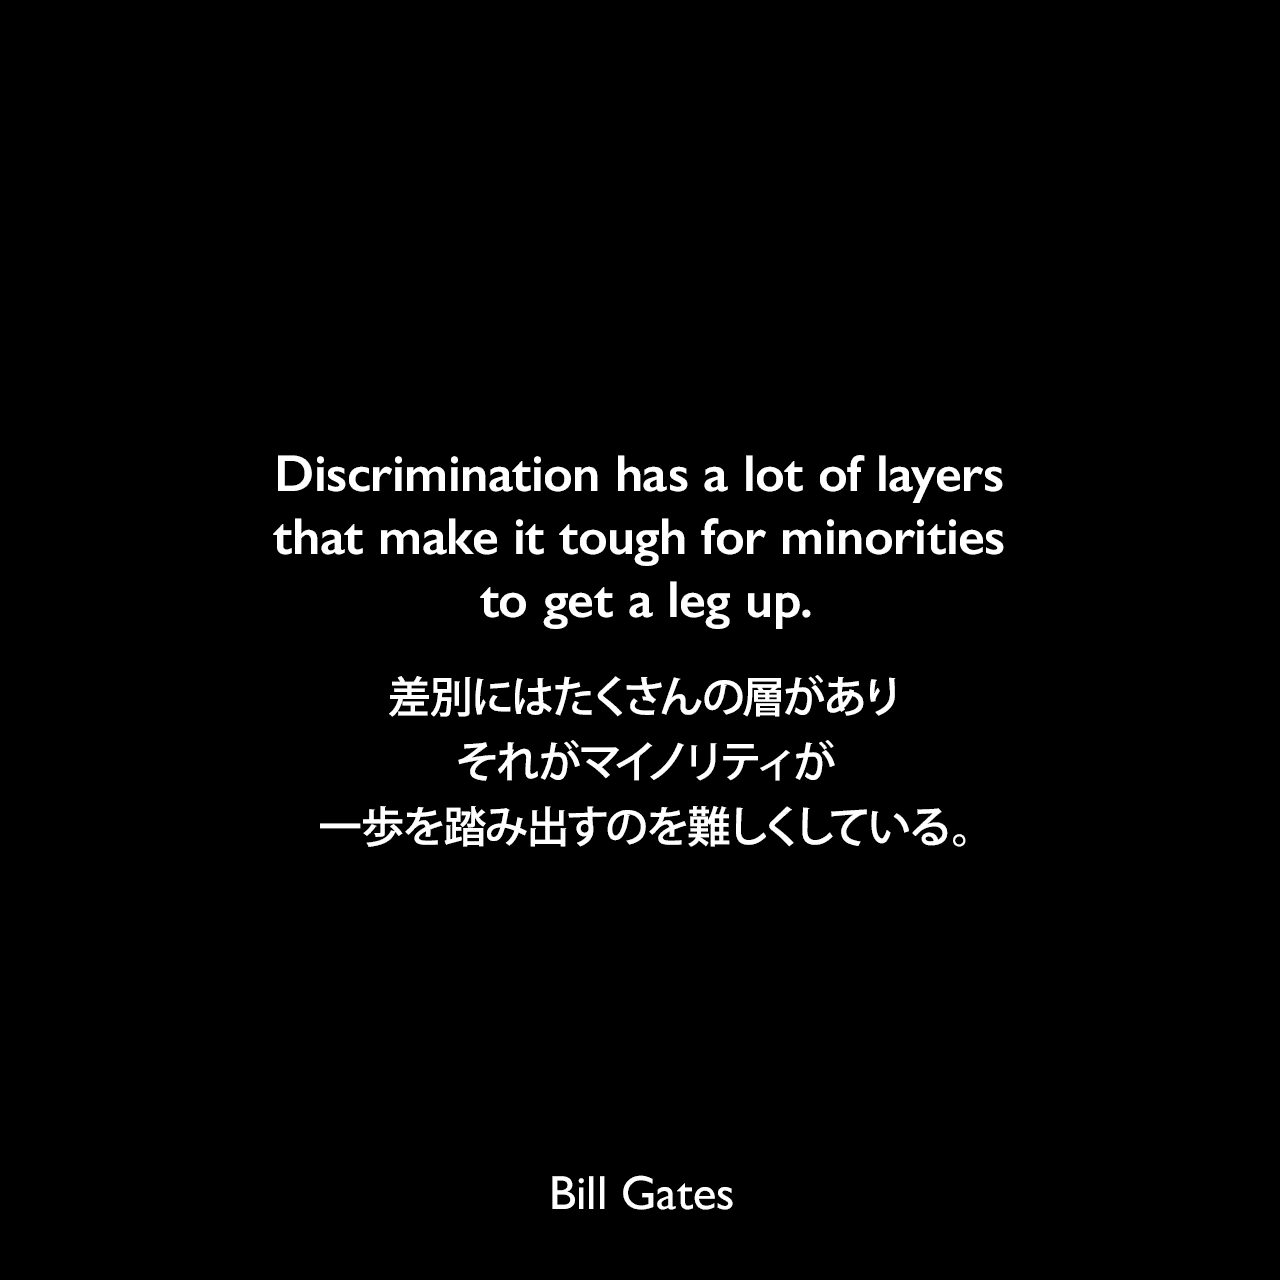 Discrimination has a lot of layers that make it tough for minorities to get a leg up.差別にはたくさんの層があり、それがマイノリティが一歩を踏み出すのを難しくしている。Bill Gates